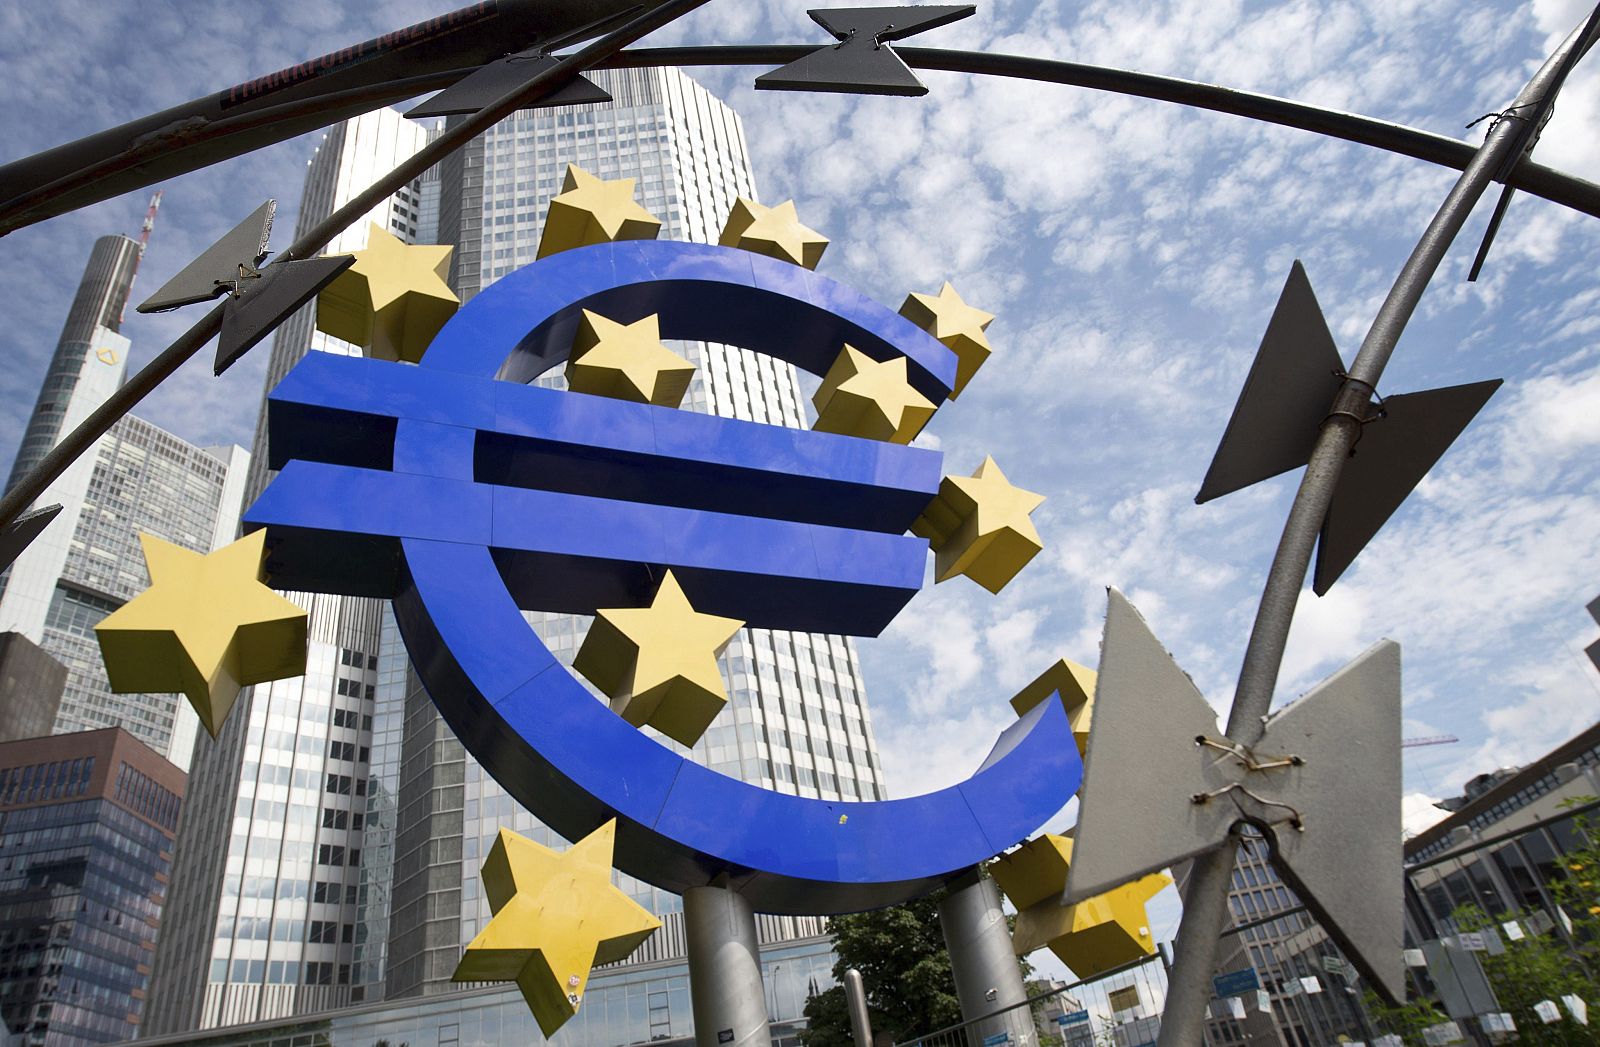 Vista de la escultura con el logo del euro que decora los alrededores de la sede del Banco Central Europeo